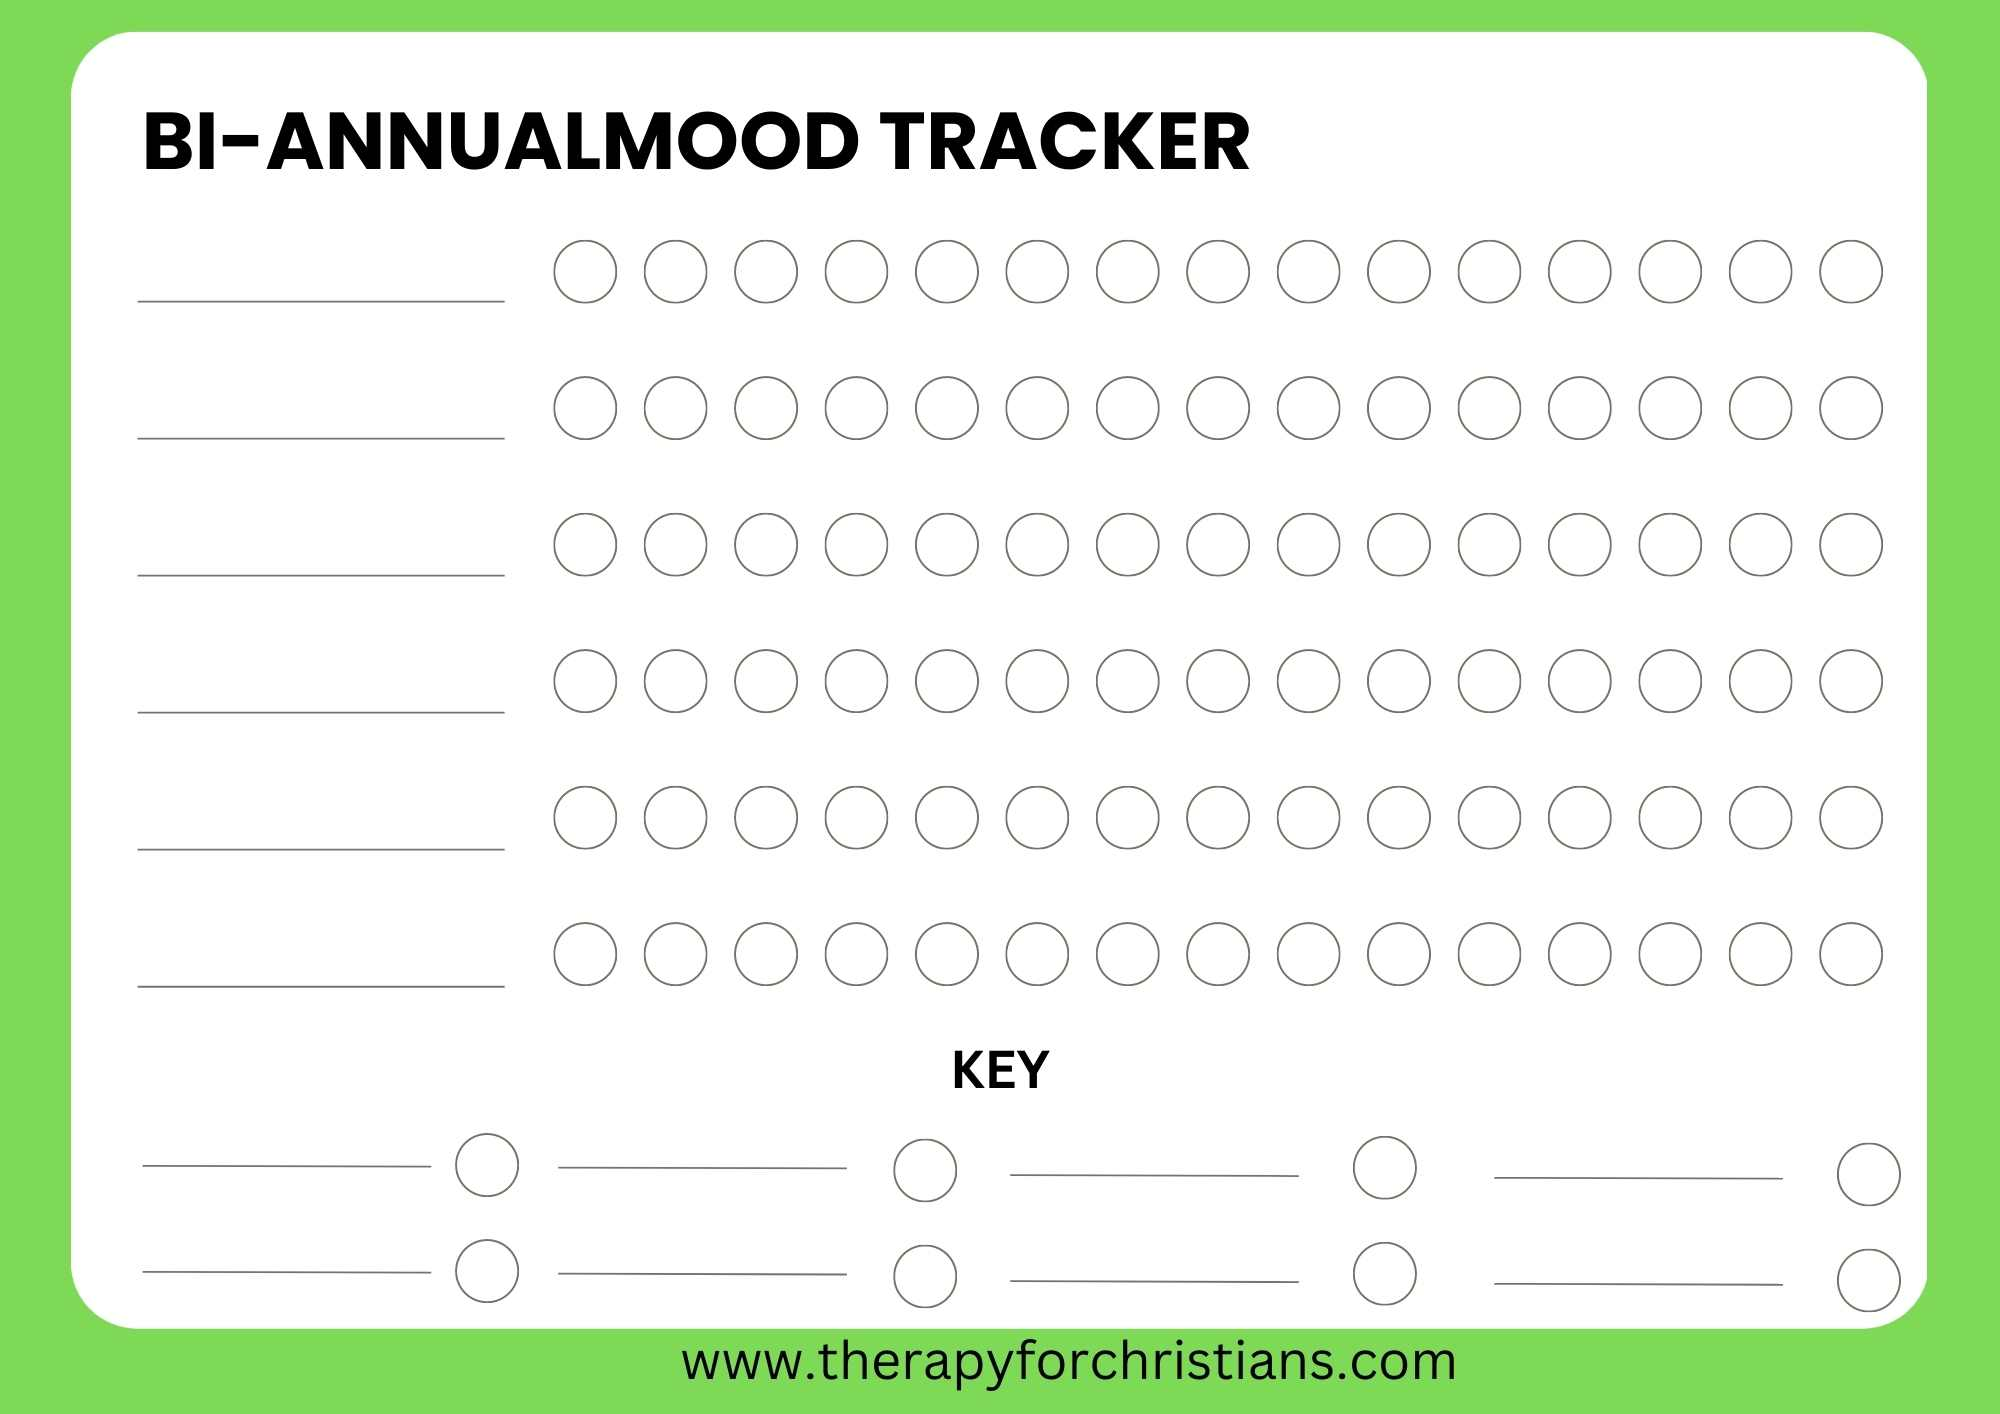 Bi-Annual Mood Tracker